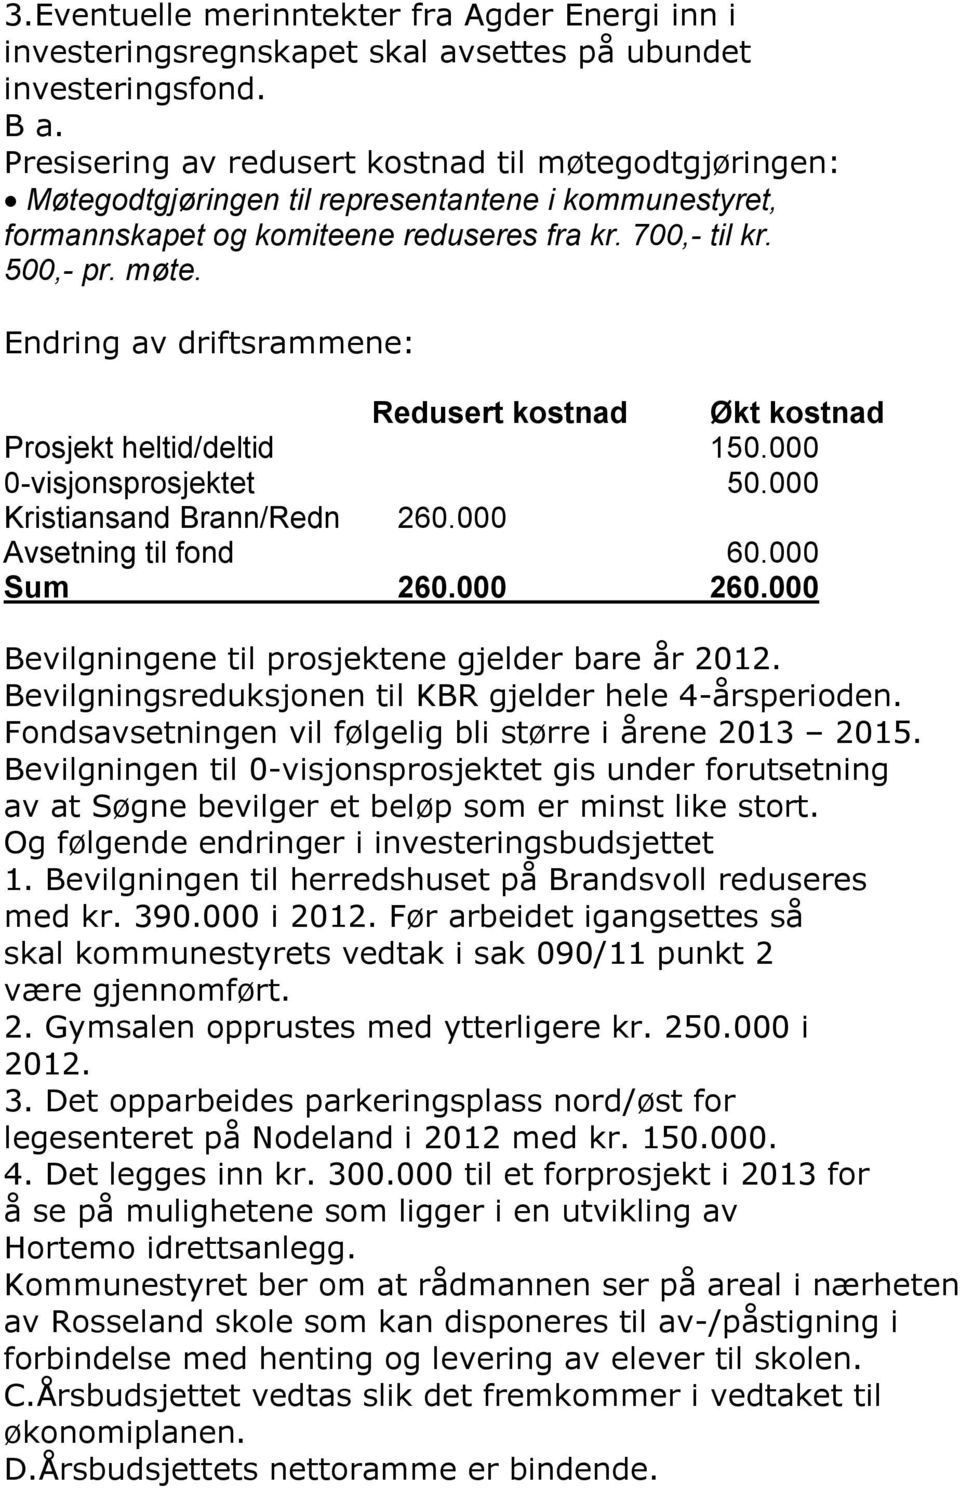 000 0-visjonsprosjektet 50.000 Kristiansand Brann/Redn 260.000 Avsetning til fond 60.000 Sum 260.000 260.000 Bevilgningene til prosjektene gjelder bare år 2012.